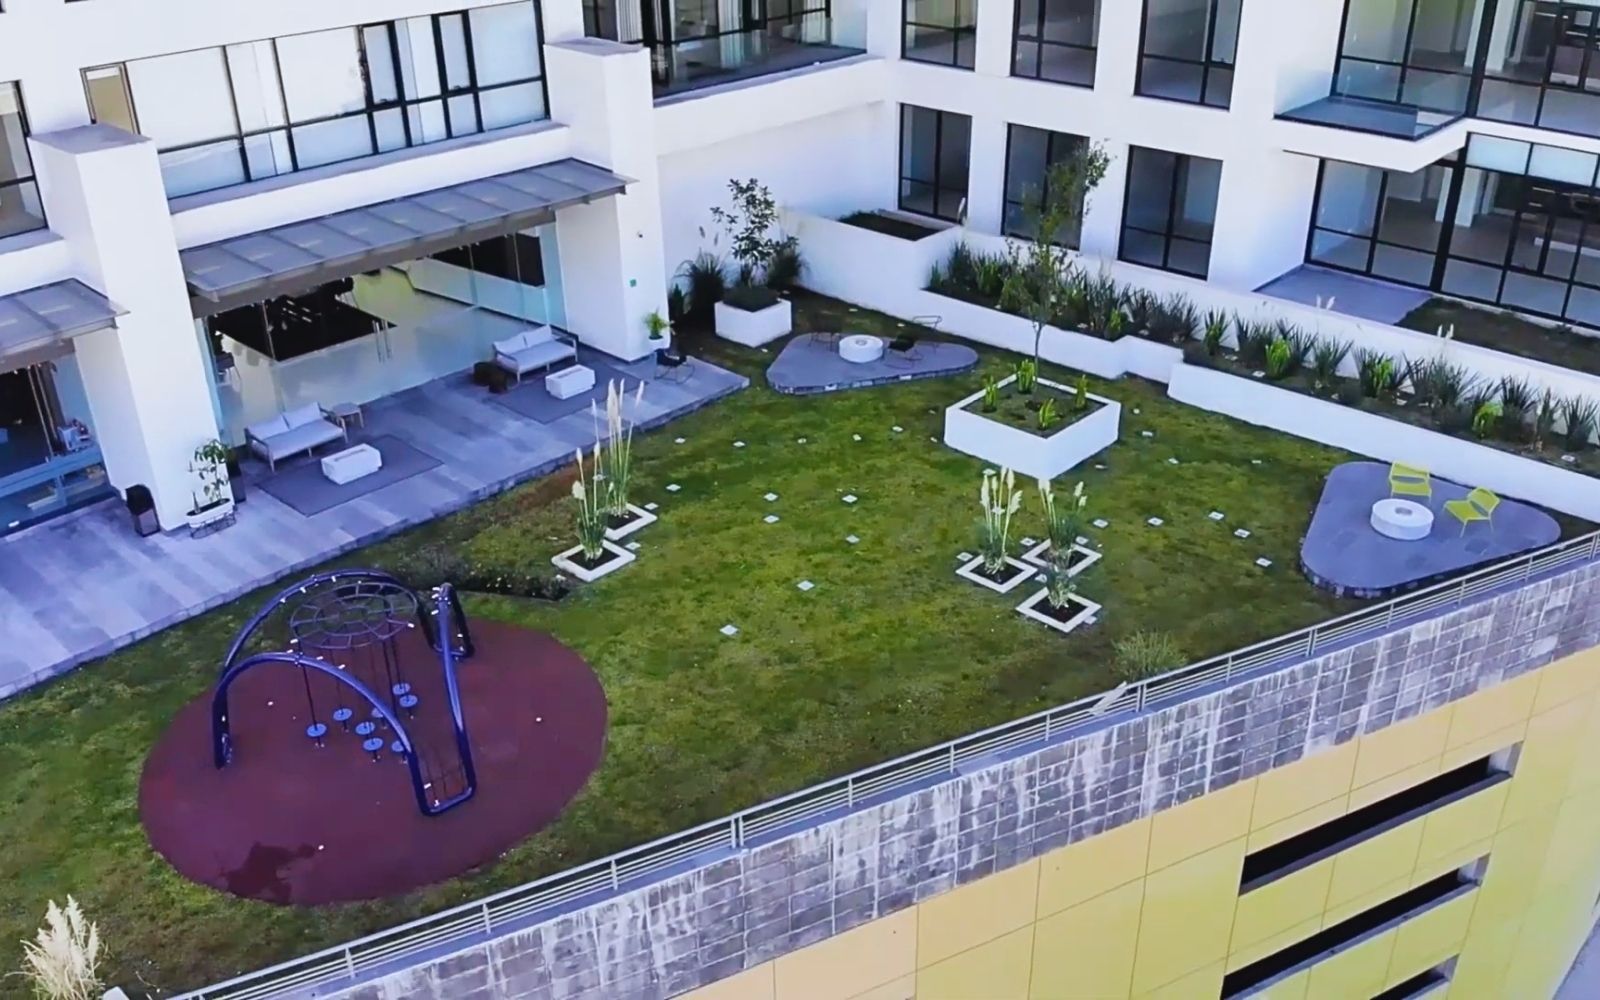 Condominium with pool, terrace, Yoga Area, for sale Roma Norte CDMX.